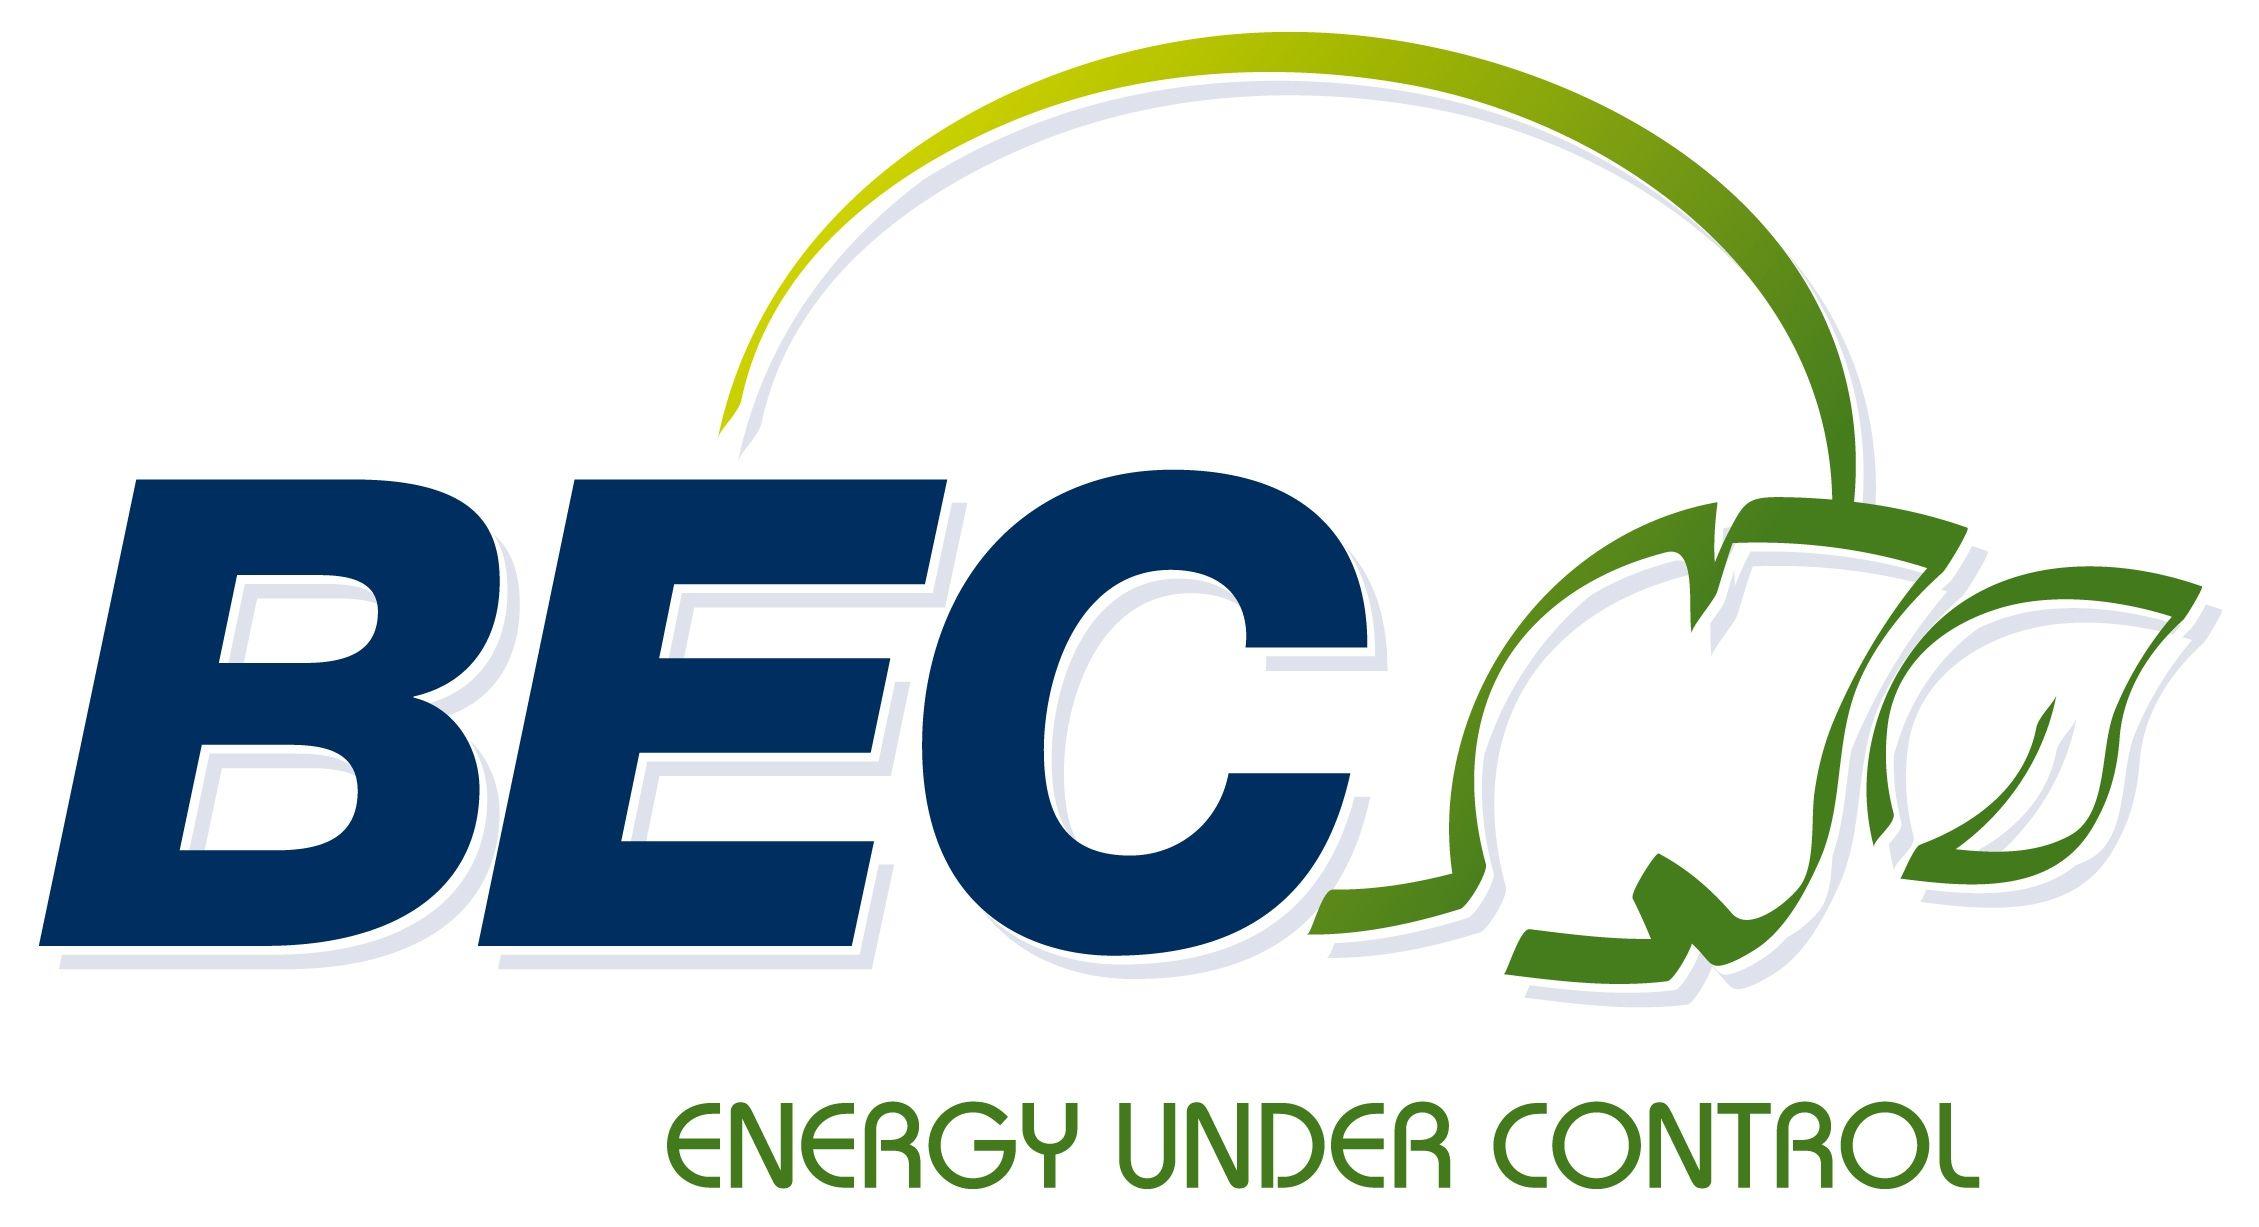 Environmental Control Logo - Building Environment Control logo - BCIA